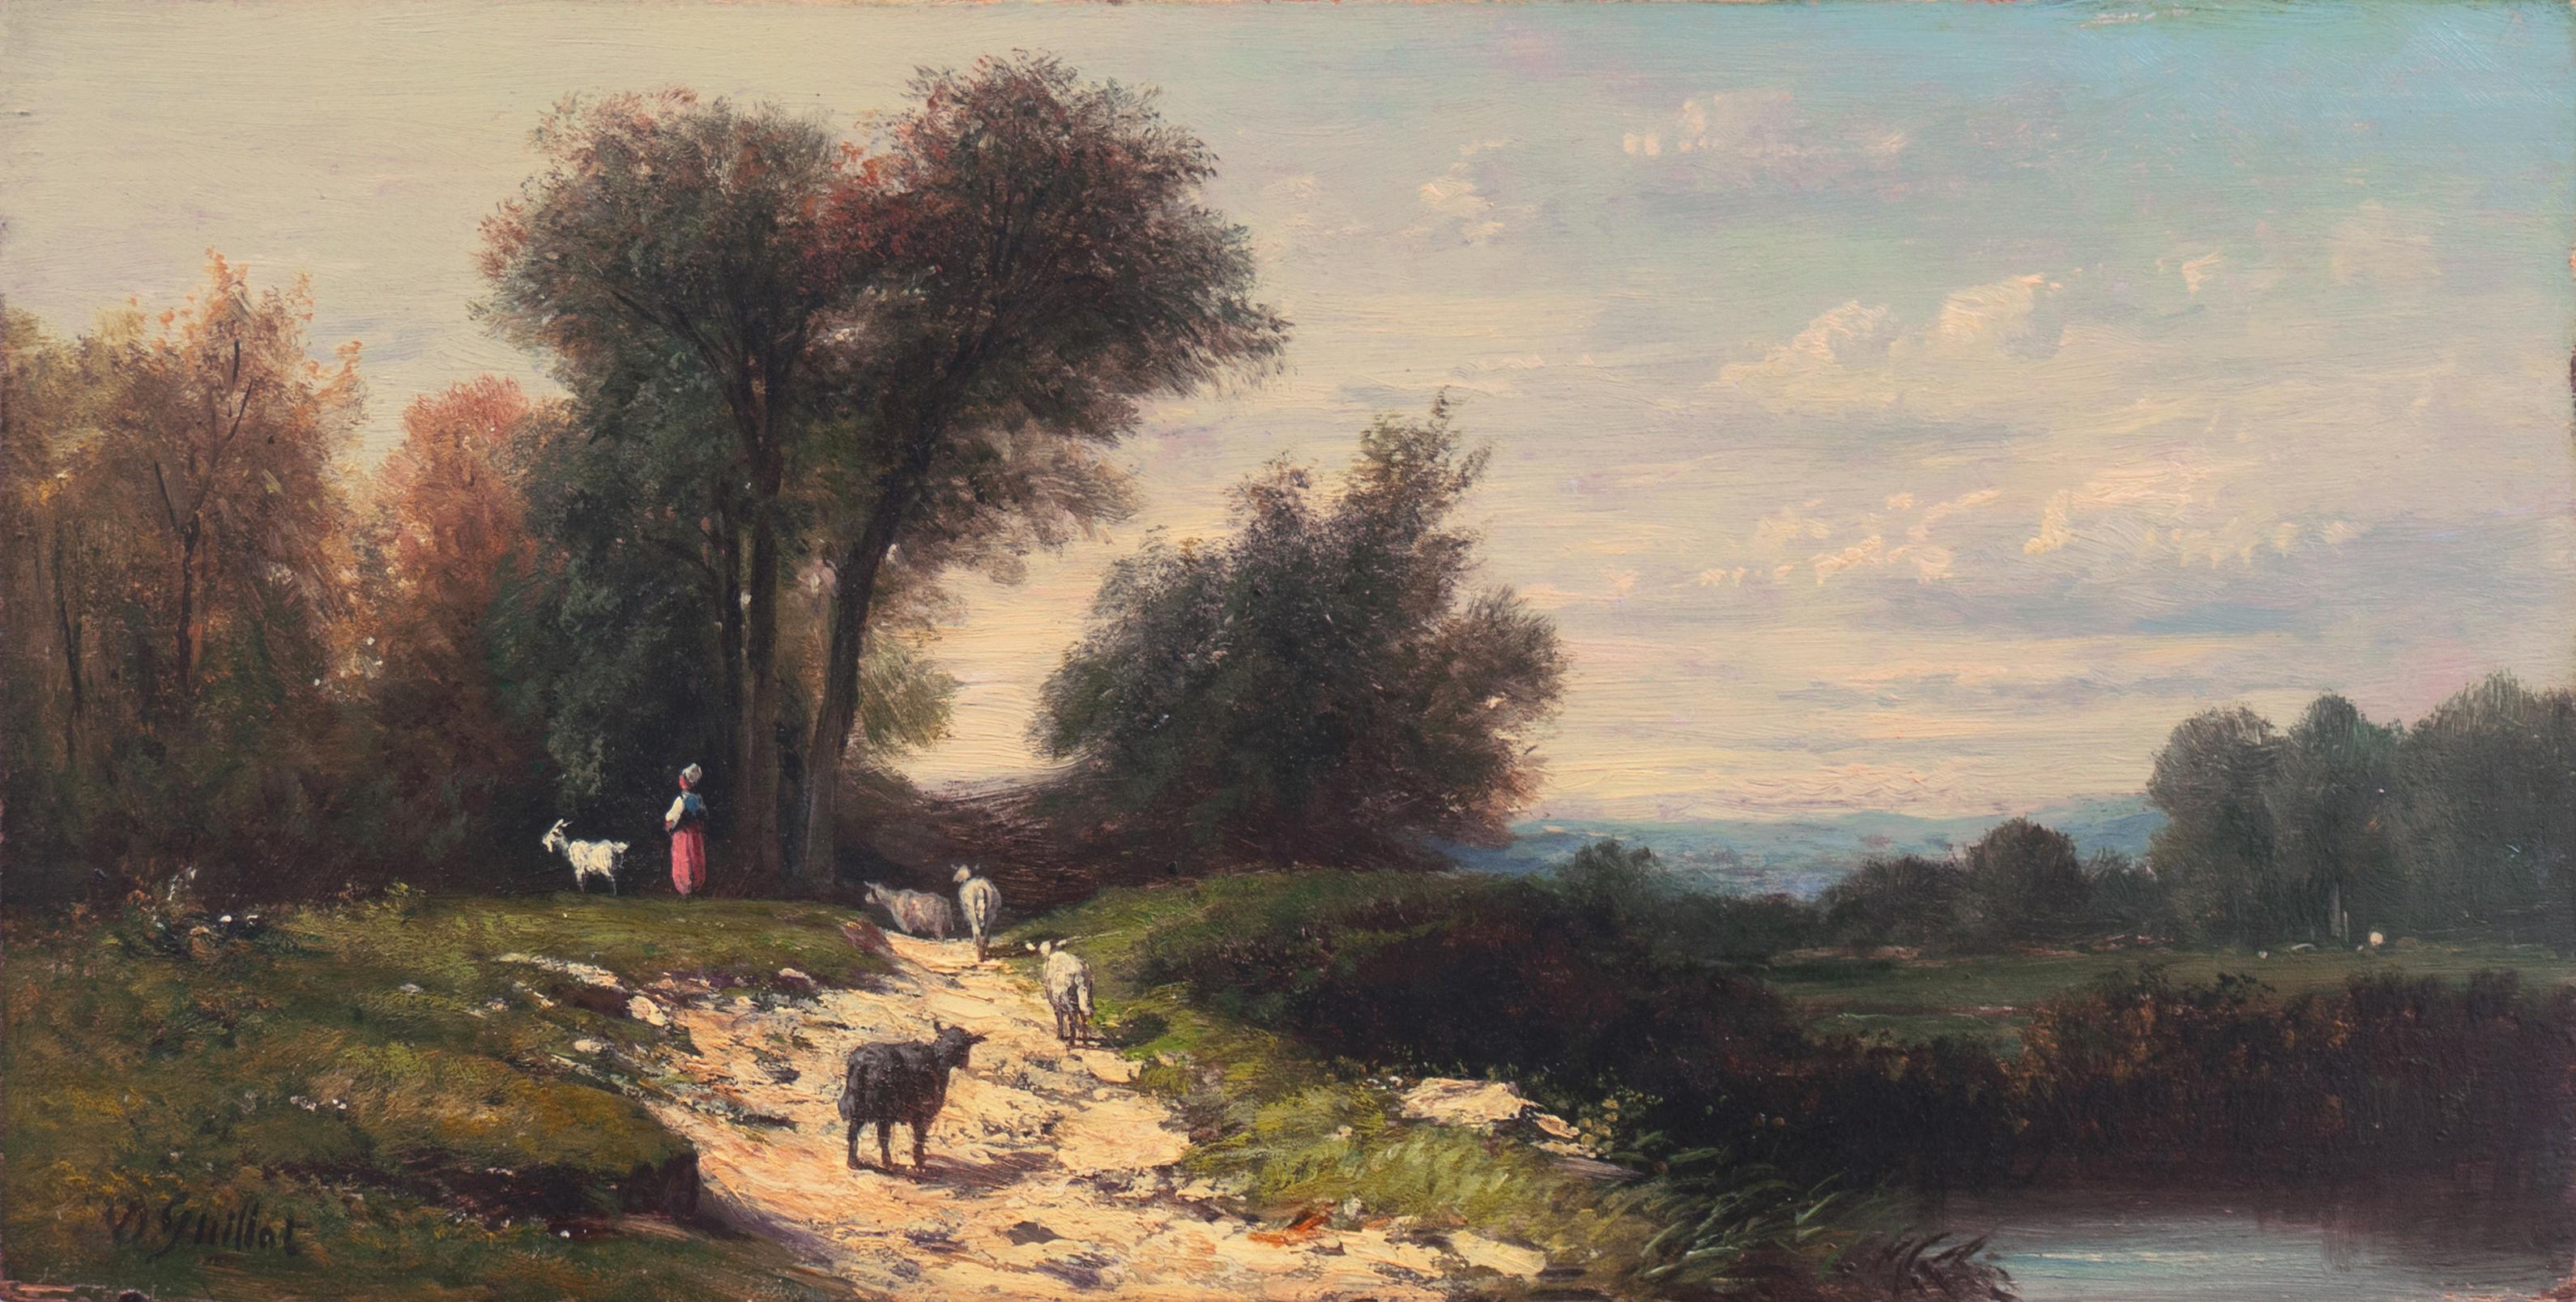 'Shepherdess in a River Landscape' Salon des Artistes Françaises, Pushkin Museum - Painting by Donat Guillot